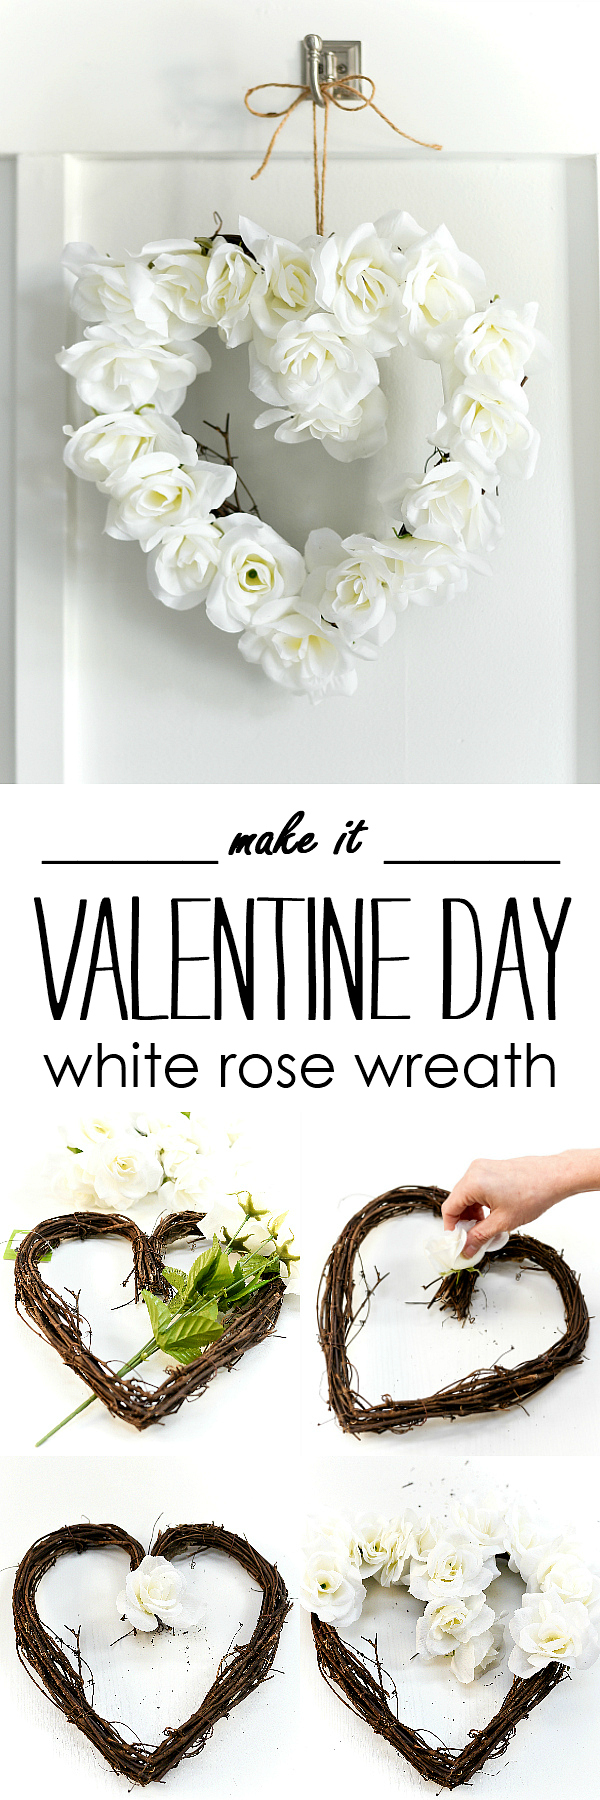 White Rose Valentine Heart Wreath - Neutral Valentine Decor Ideas - White Rose Heart Wreath